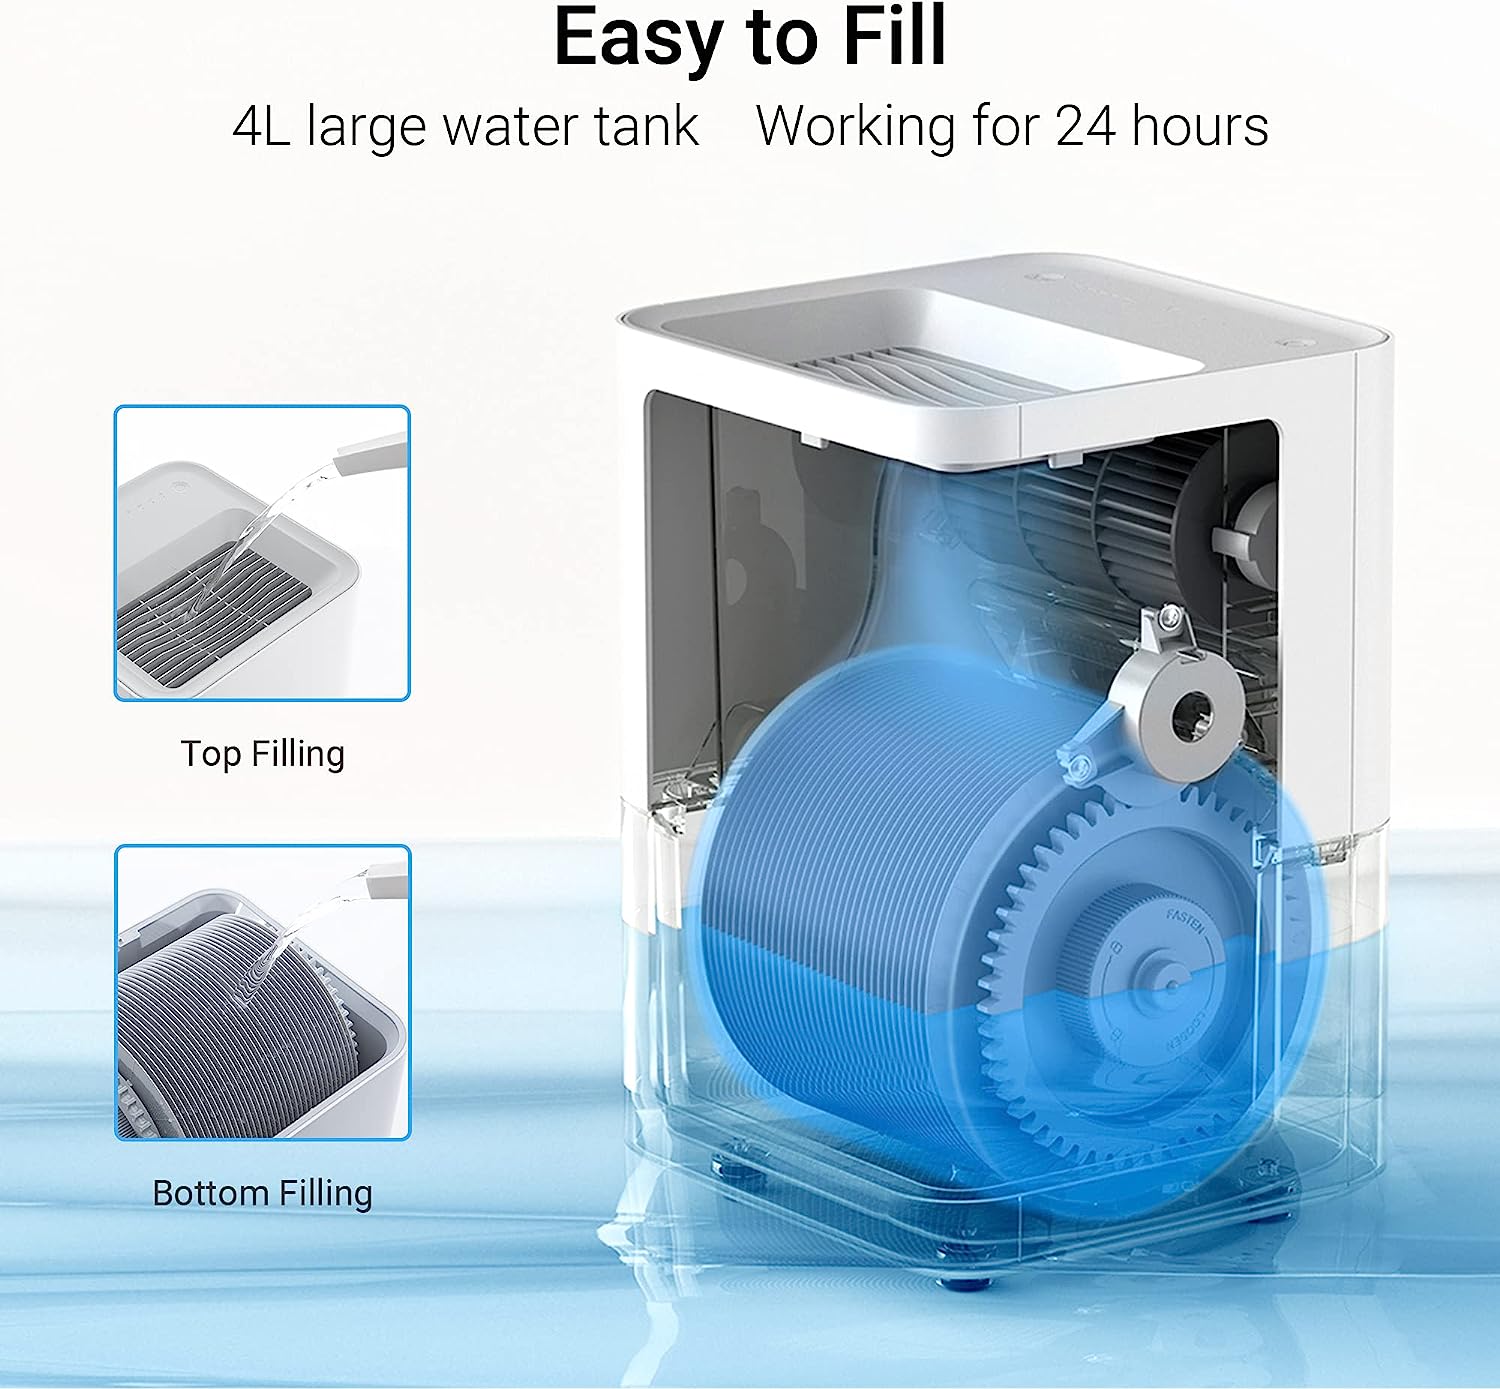 Máy Tạo Ẩm Xiaomi Smartmi Evaporative Humidifier 1 Thông Minh Tạo Ẩm Tự Nhiên, Không Tạo Sương Tự Động Làm Sạch Dung Tích 4 Lít, Kết Nối App Theo Dõi - Hàng Chính Hãng